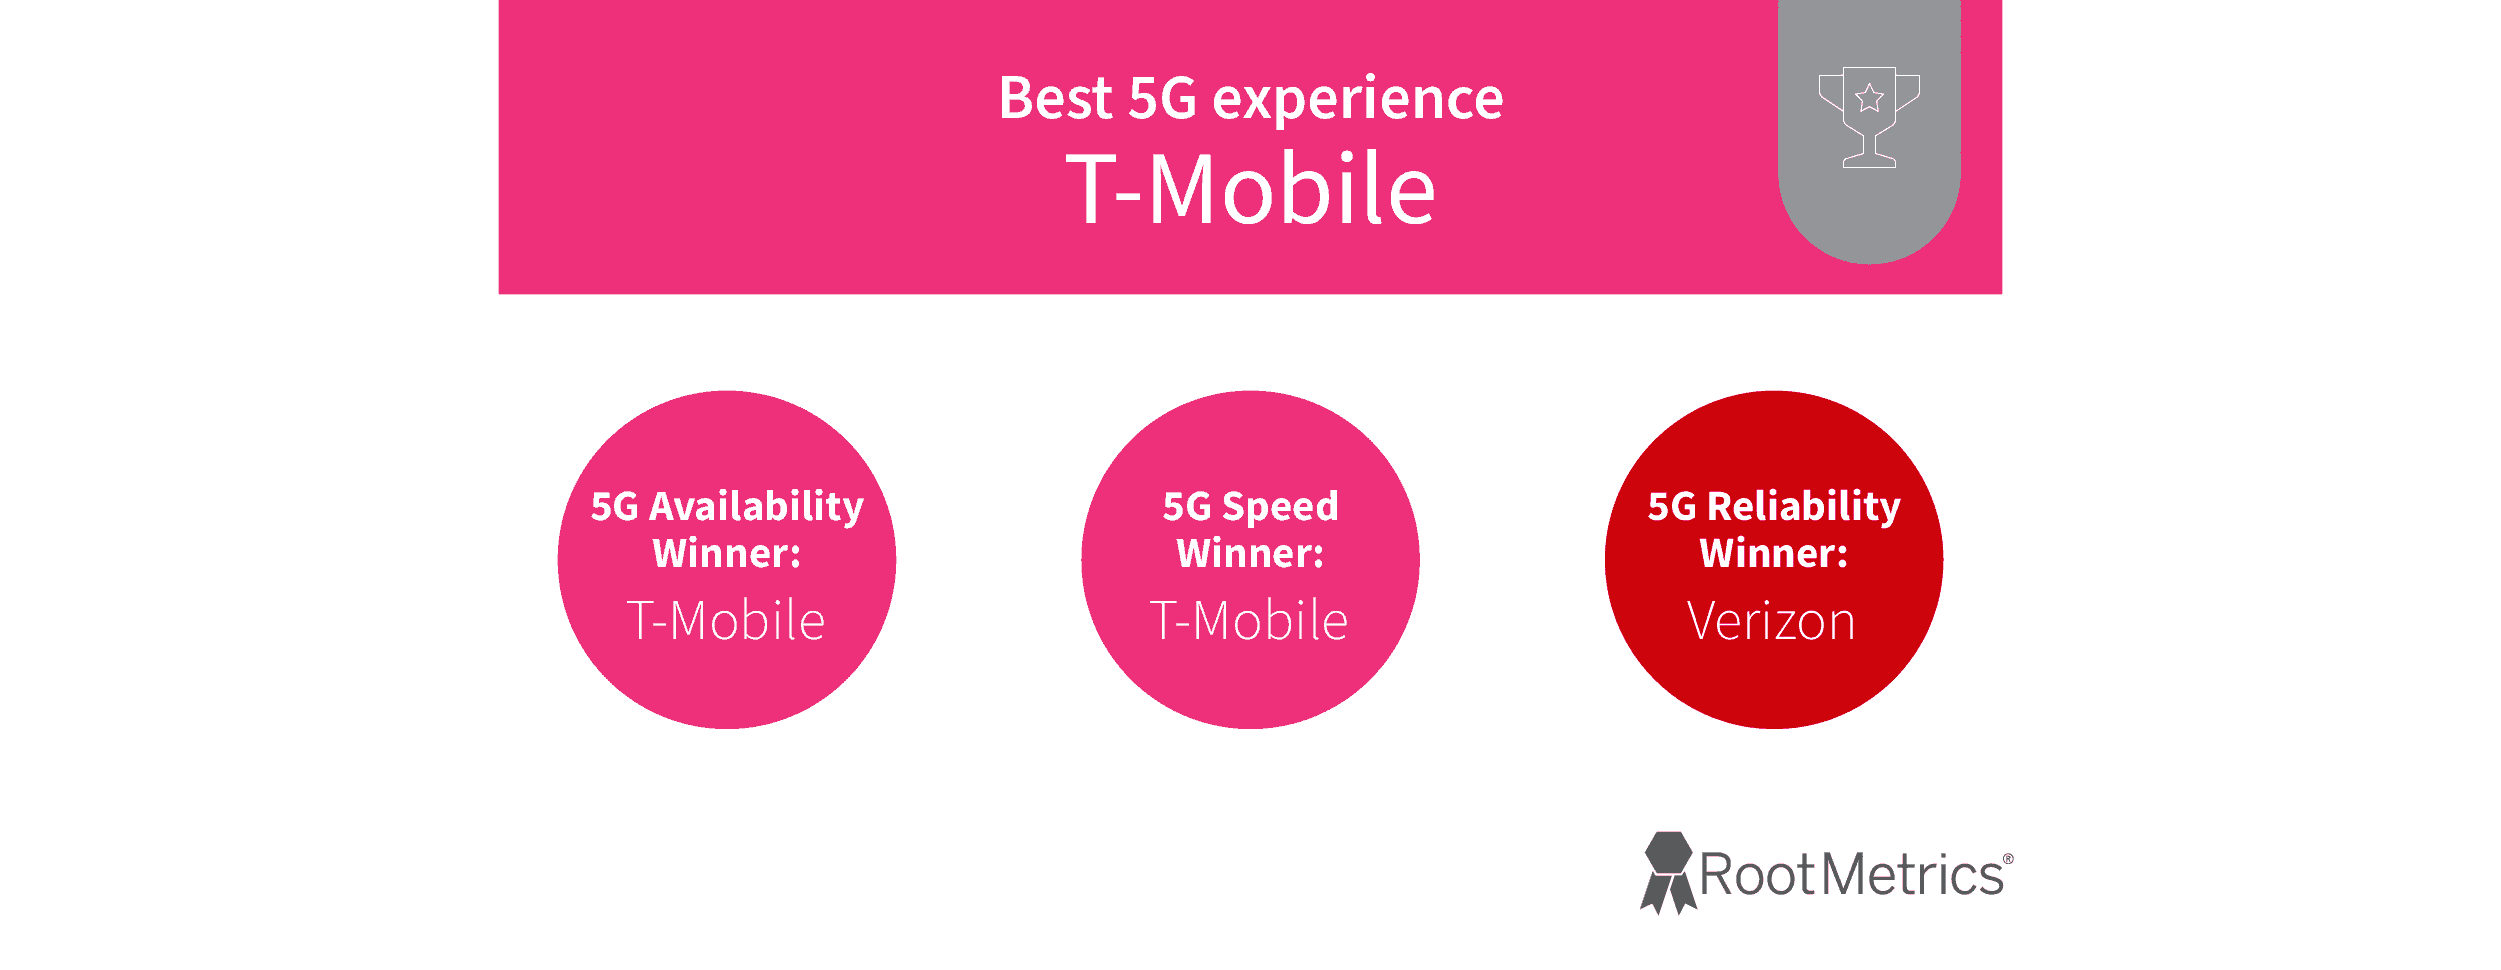 1Y 2022'de RootMetrics'e göre T-Mobile 5G'nin en iyisi olduğunu gösteren bir grafik